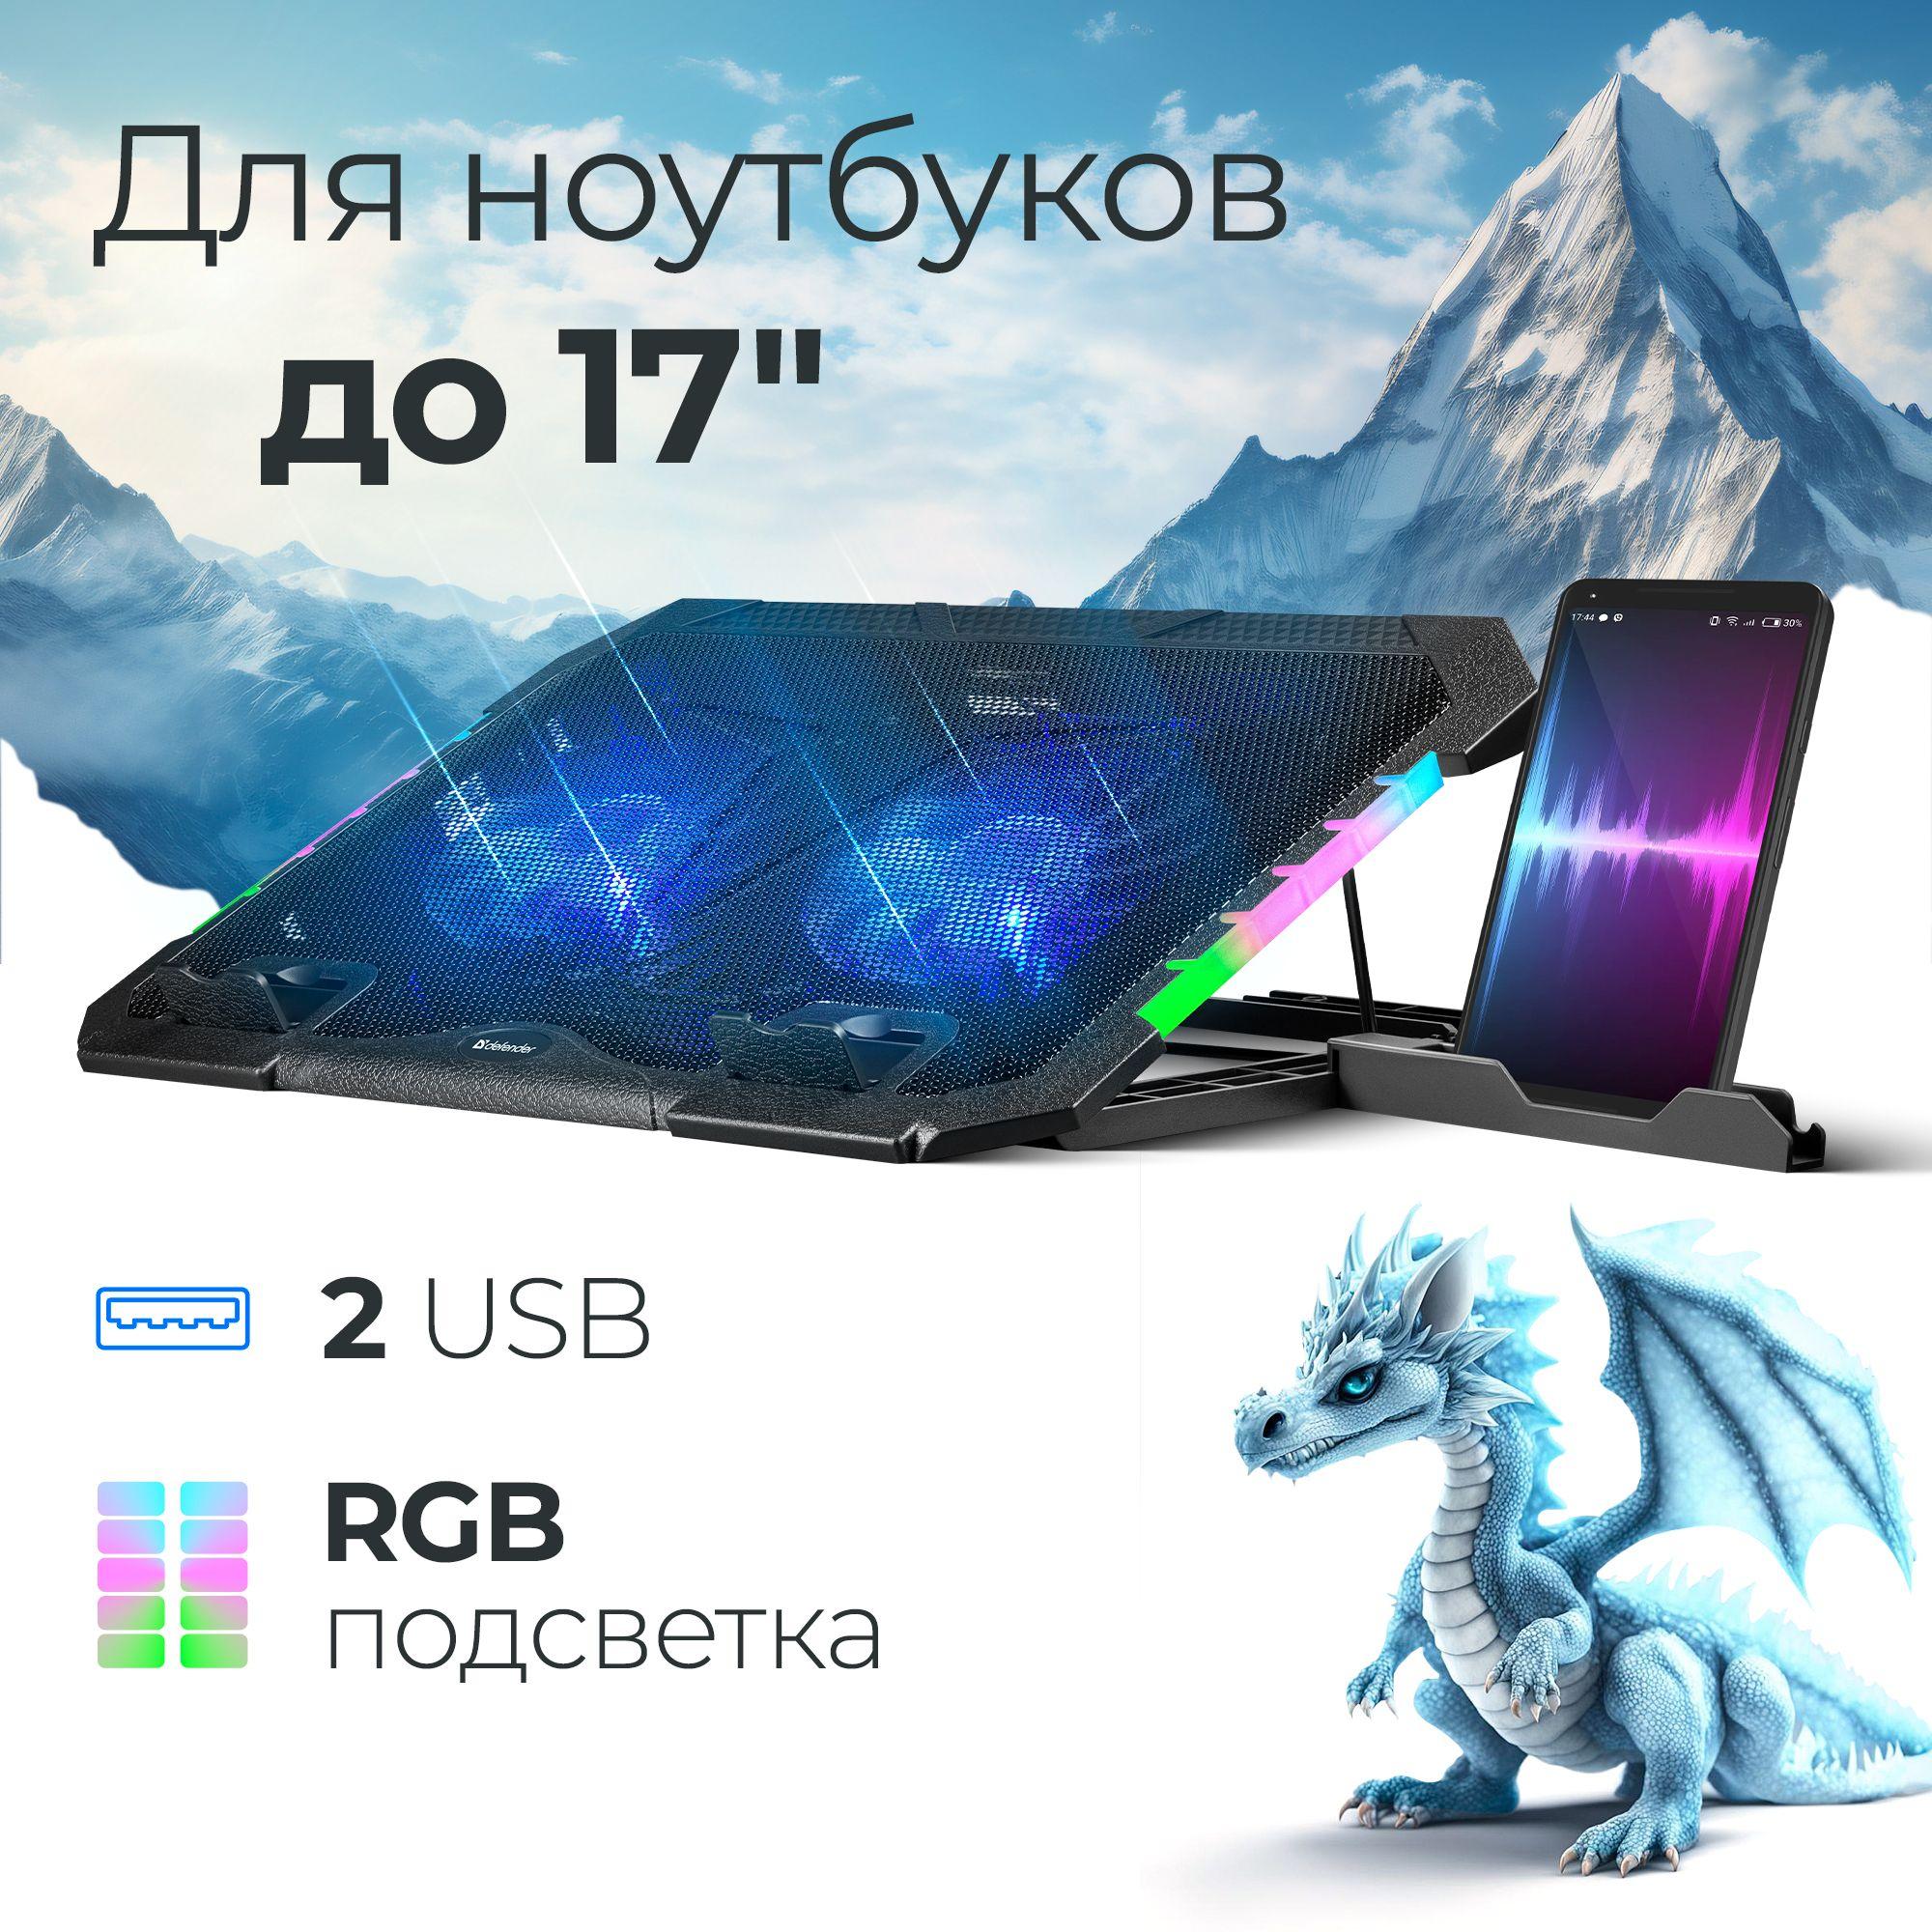 Подставка для ноутбука 17" с RGB, с держателем для телефона Defender NS-502, 2USB, 2 вентилятора